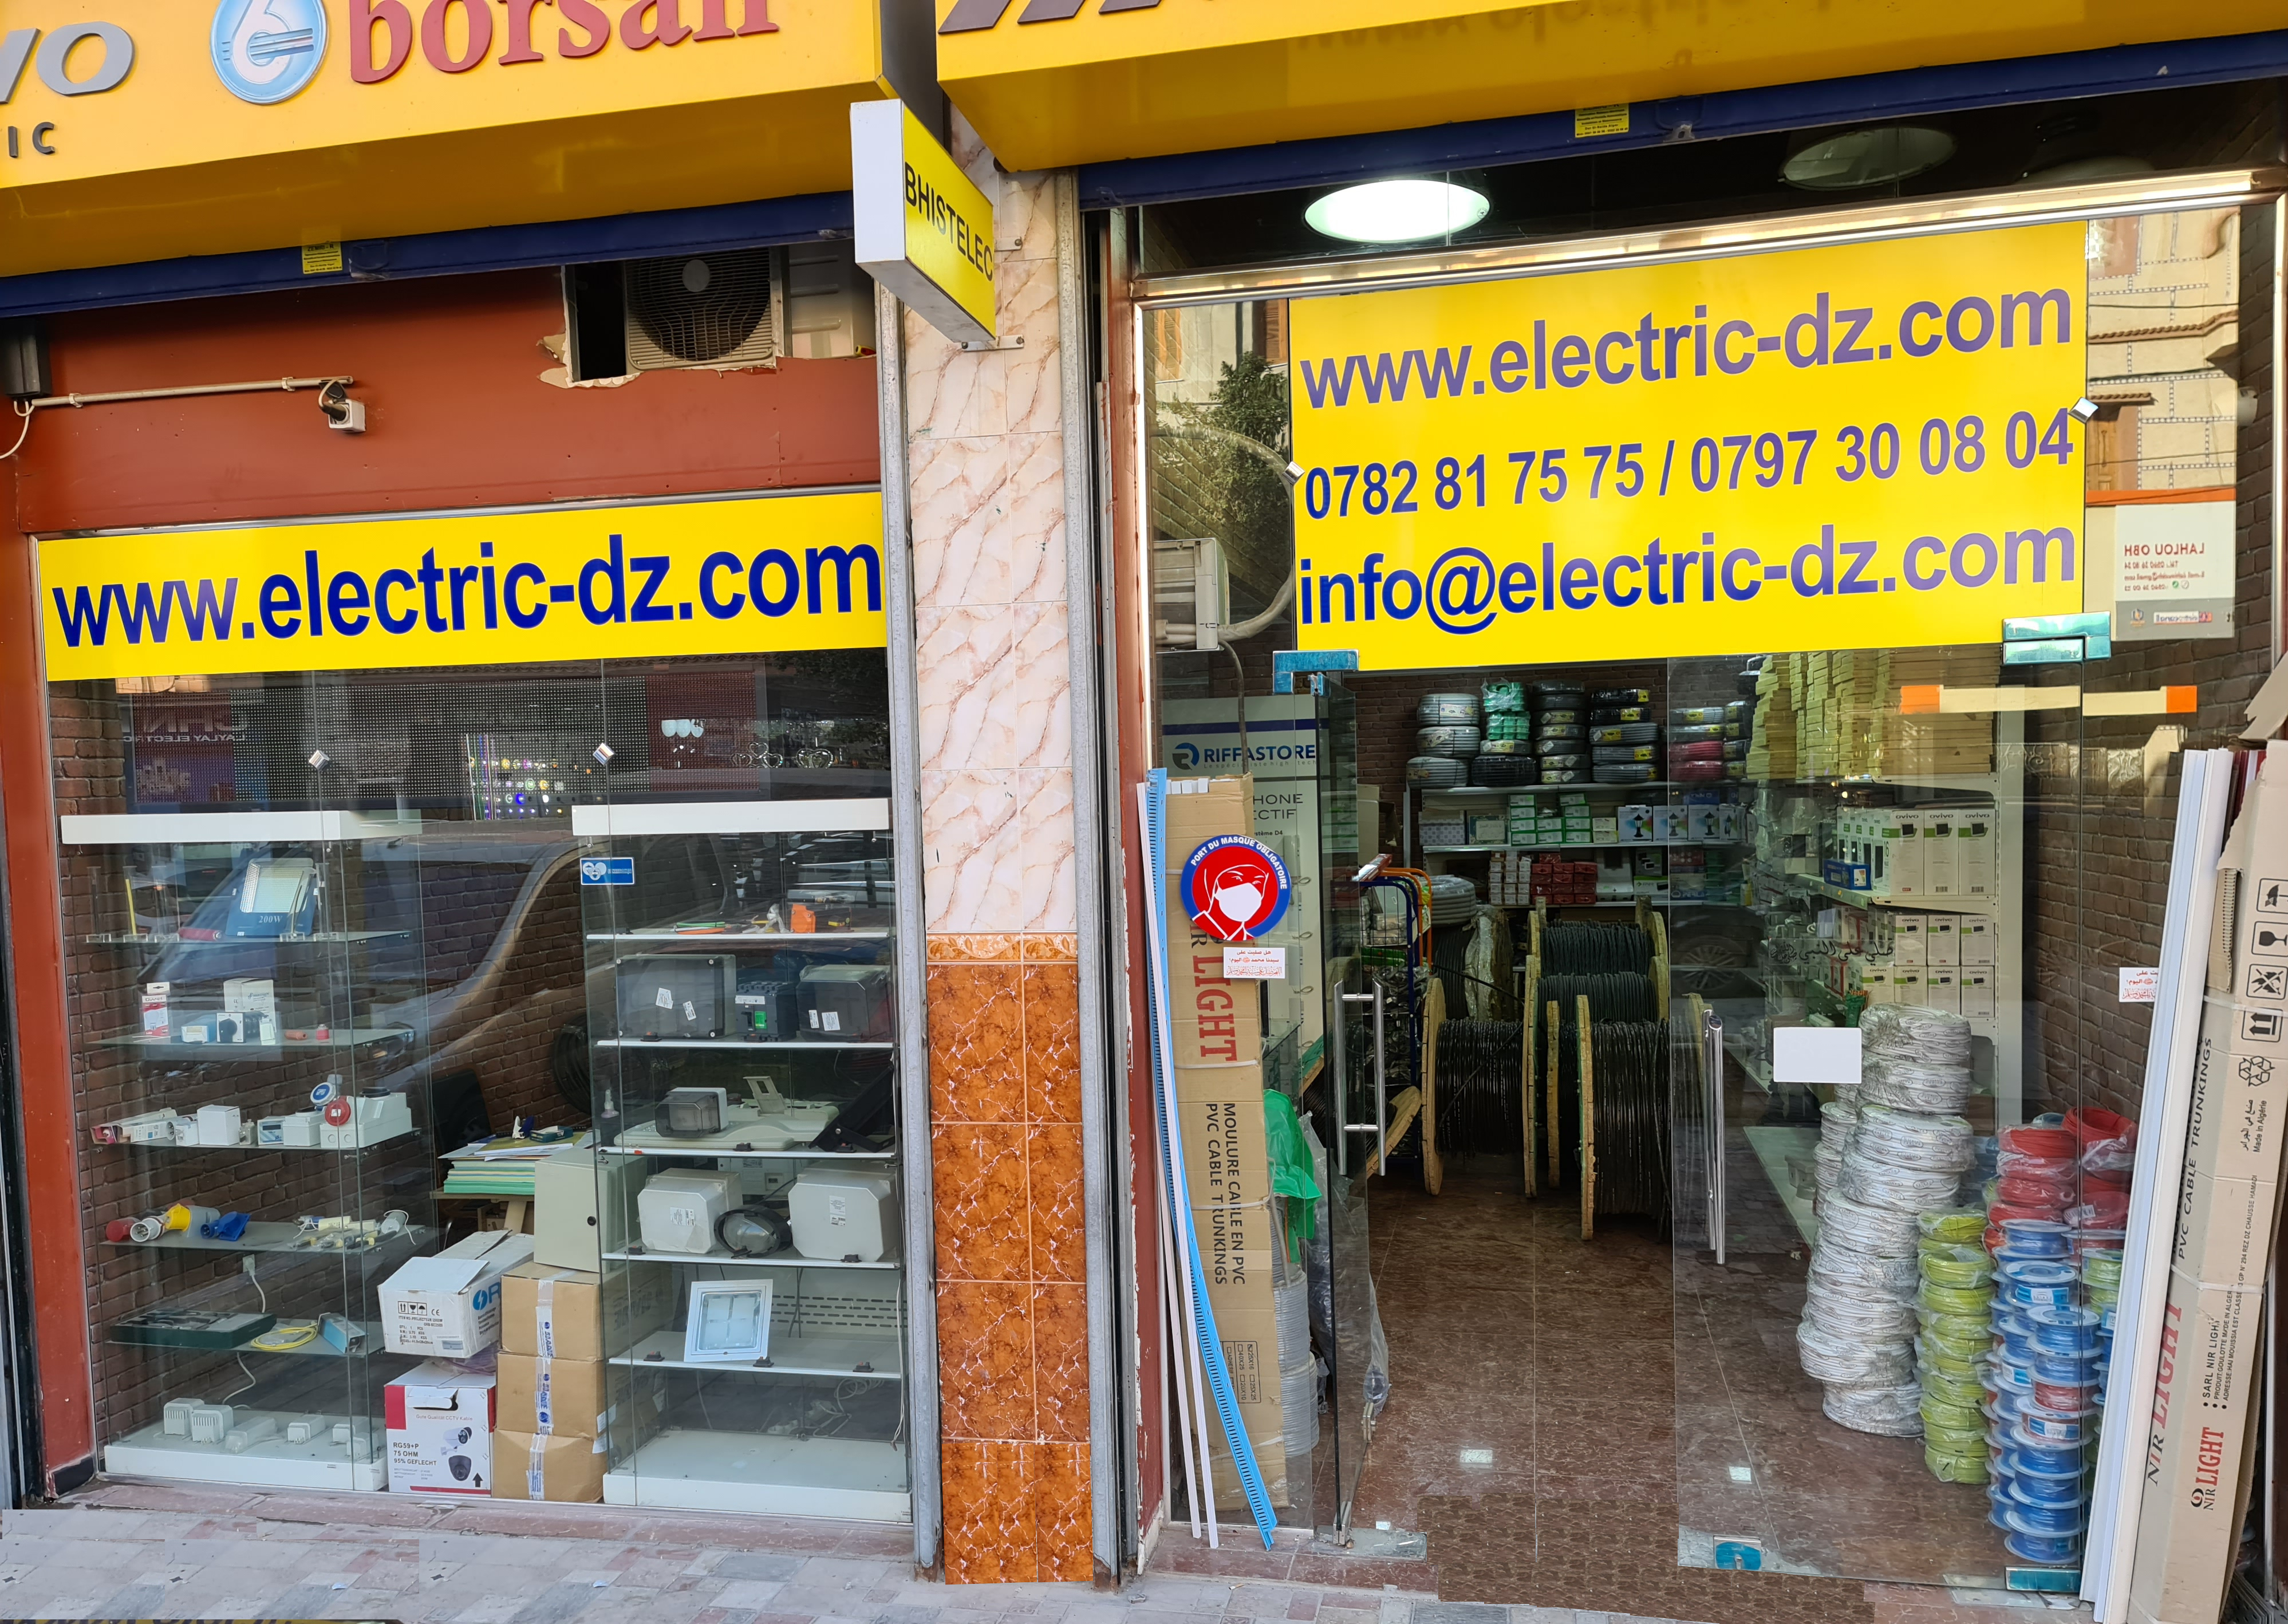 ELECTIC-DZ, votre fournisseur fiable de matériels électriques.